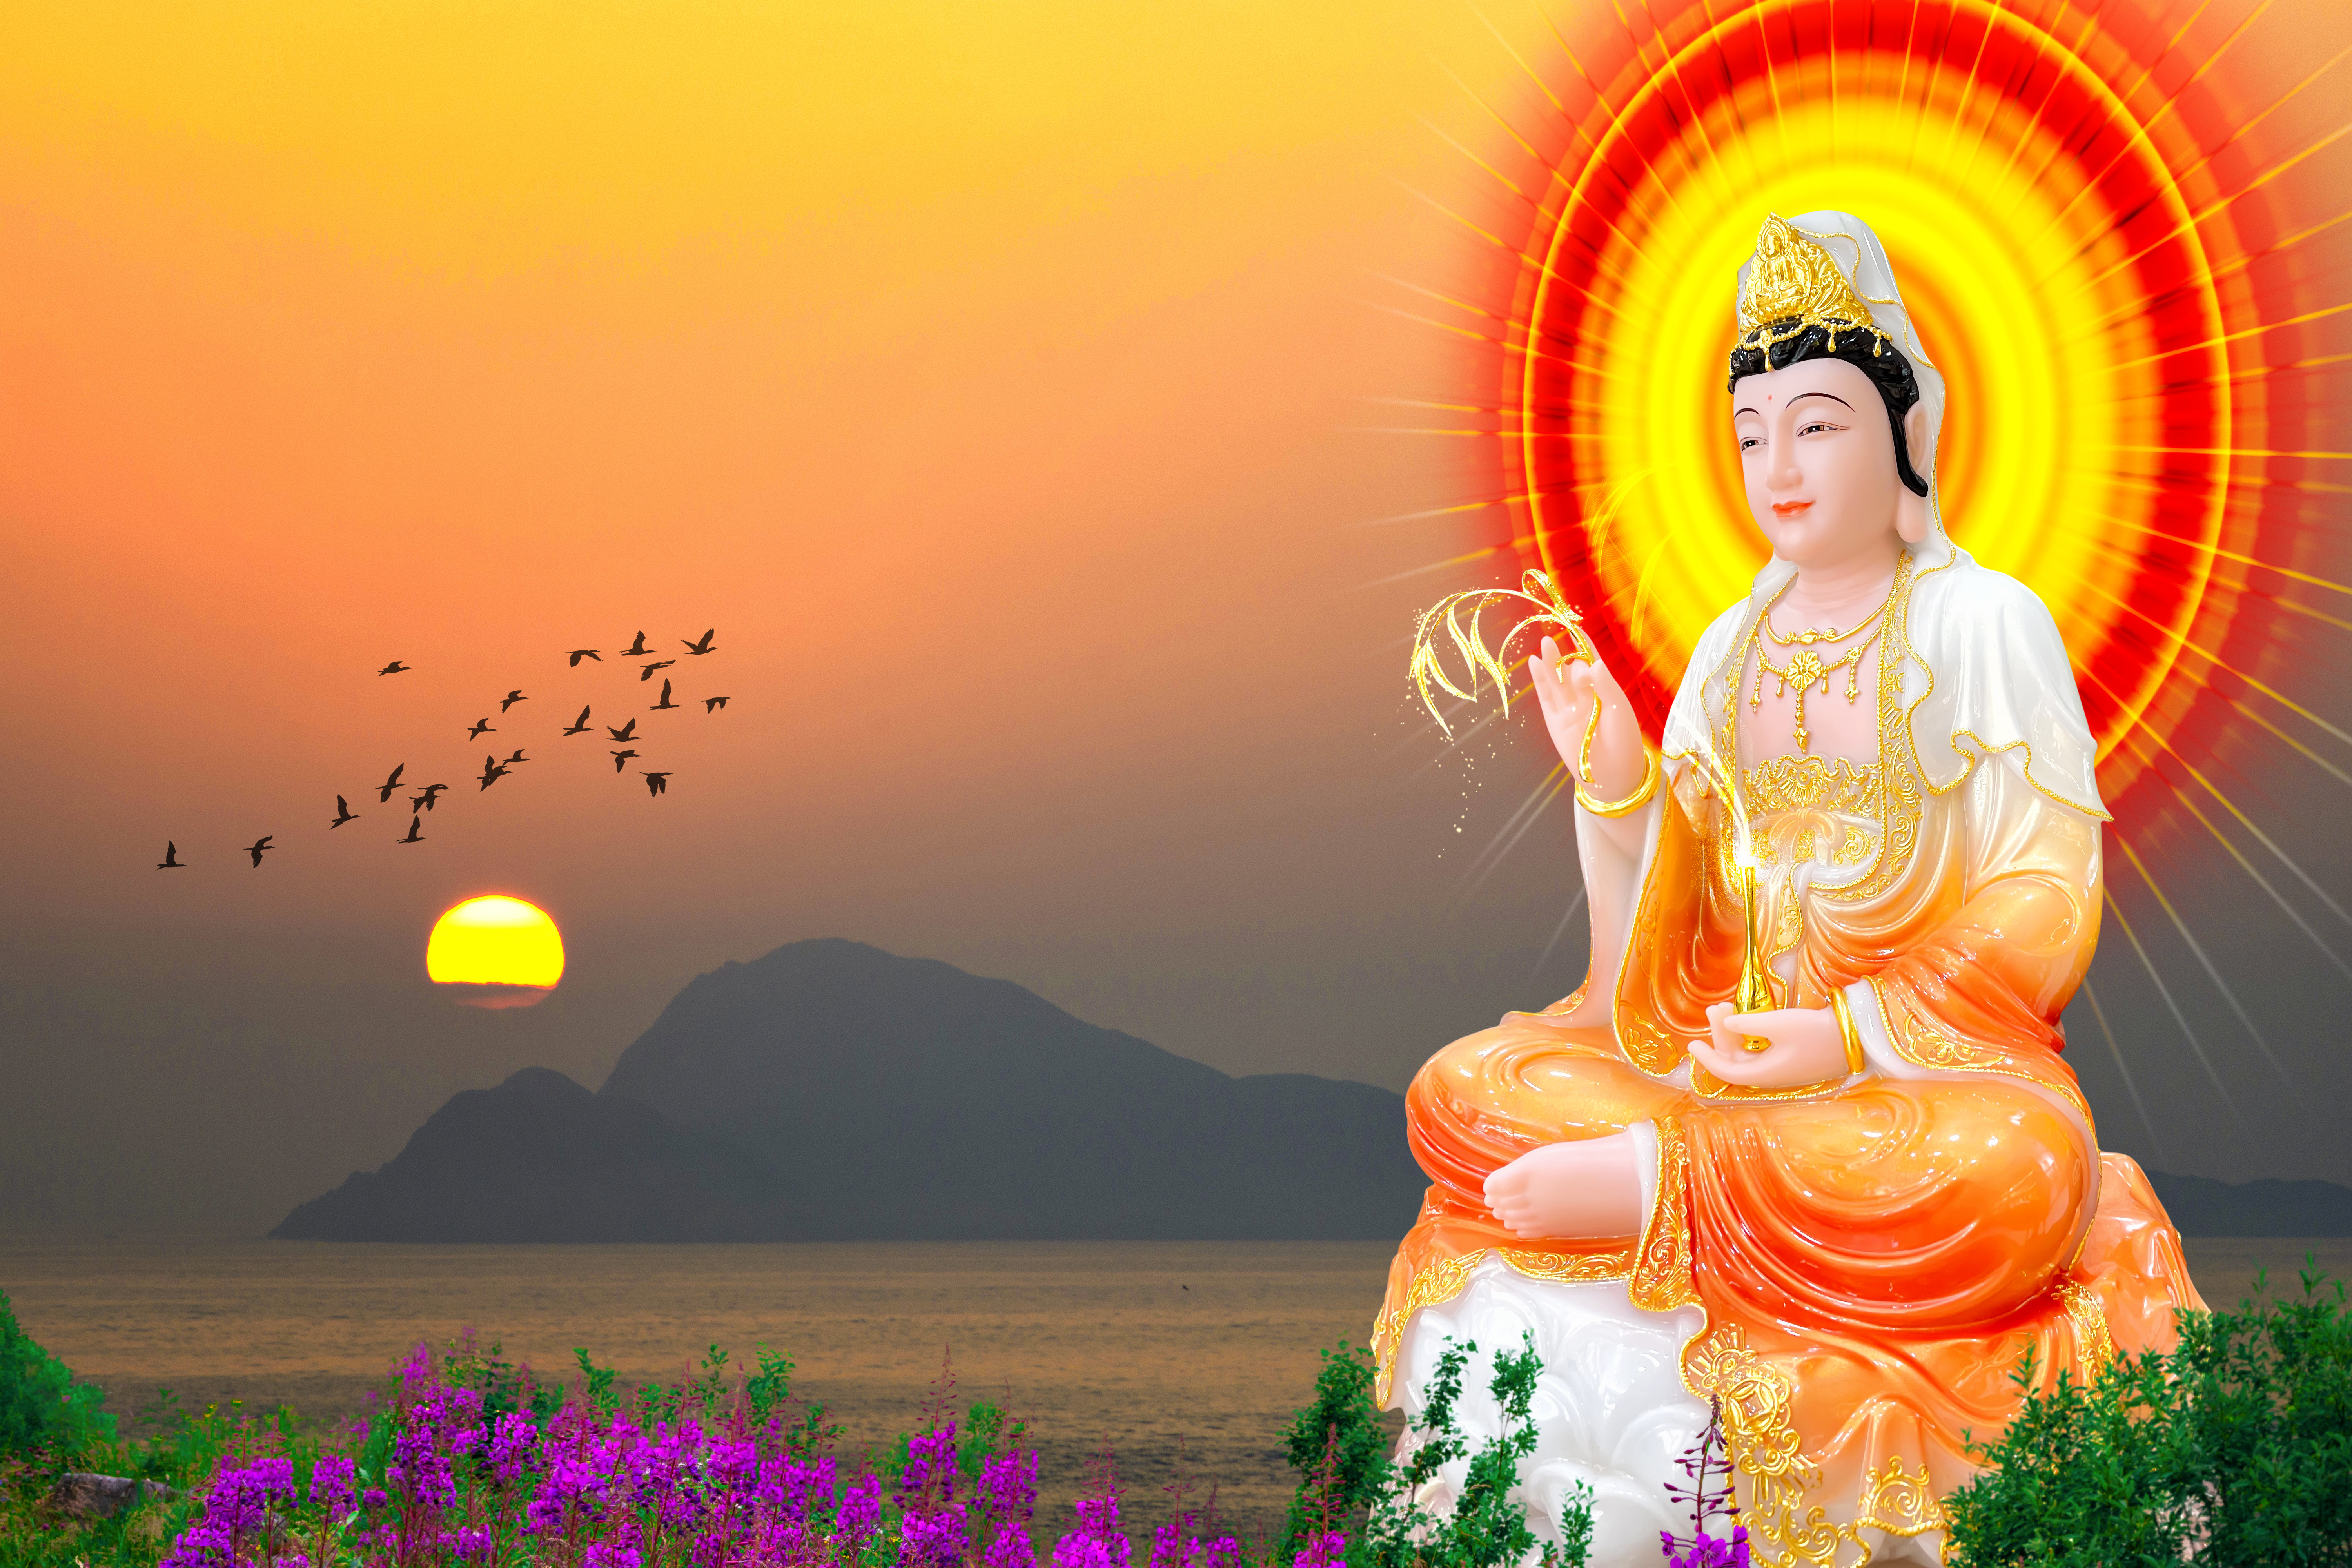 A Di Đà Phật Quán Thế Âm Guanyin: Nếu bạn đang tìm kiếm niềm tin và sự bảo vệ từ đức Phật, hãy đến với A Di Đà Phật Quán Thế Âm Guanyin. Đây là những hình ảnh vô cùng tôn nghiêm về đức Phật và sẽ giúp cho bạn tìm lại tinh thần và sự thanh tịnh trong cuộc sống.